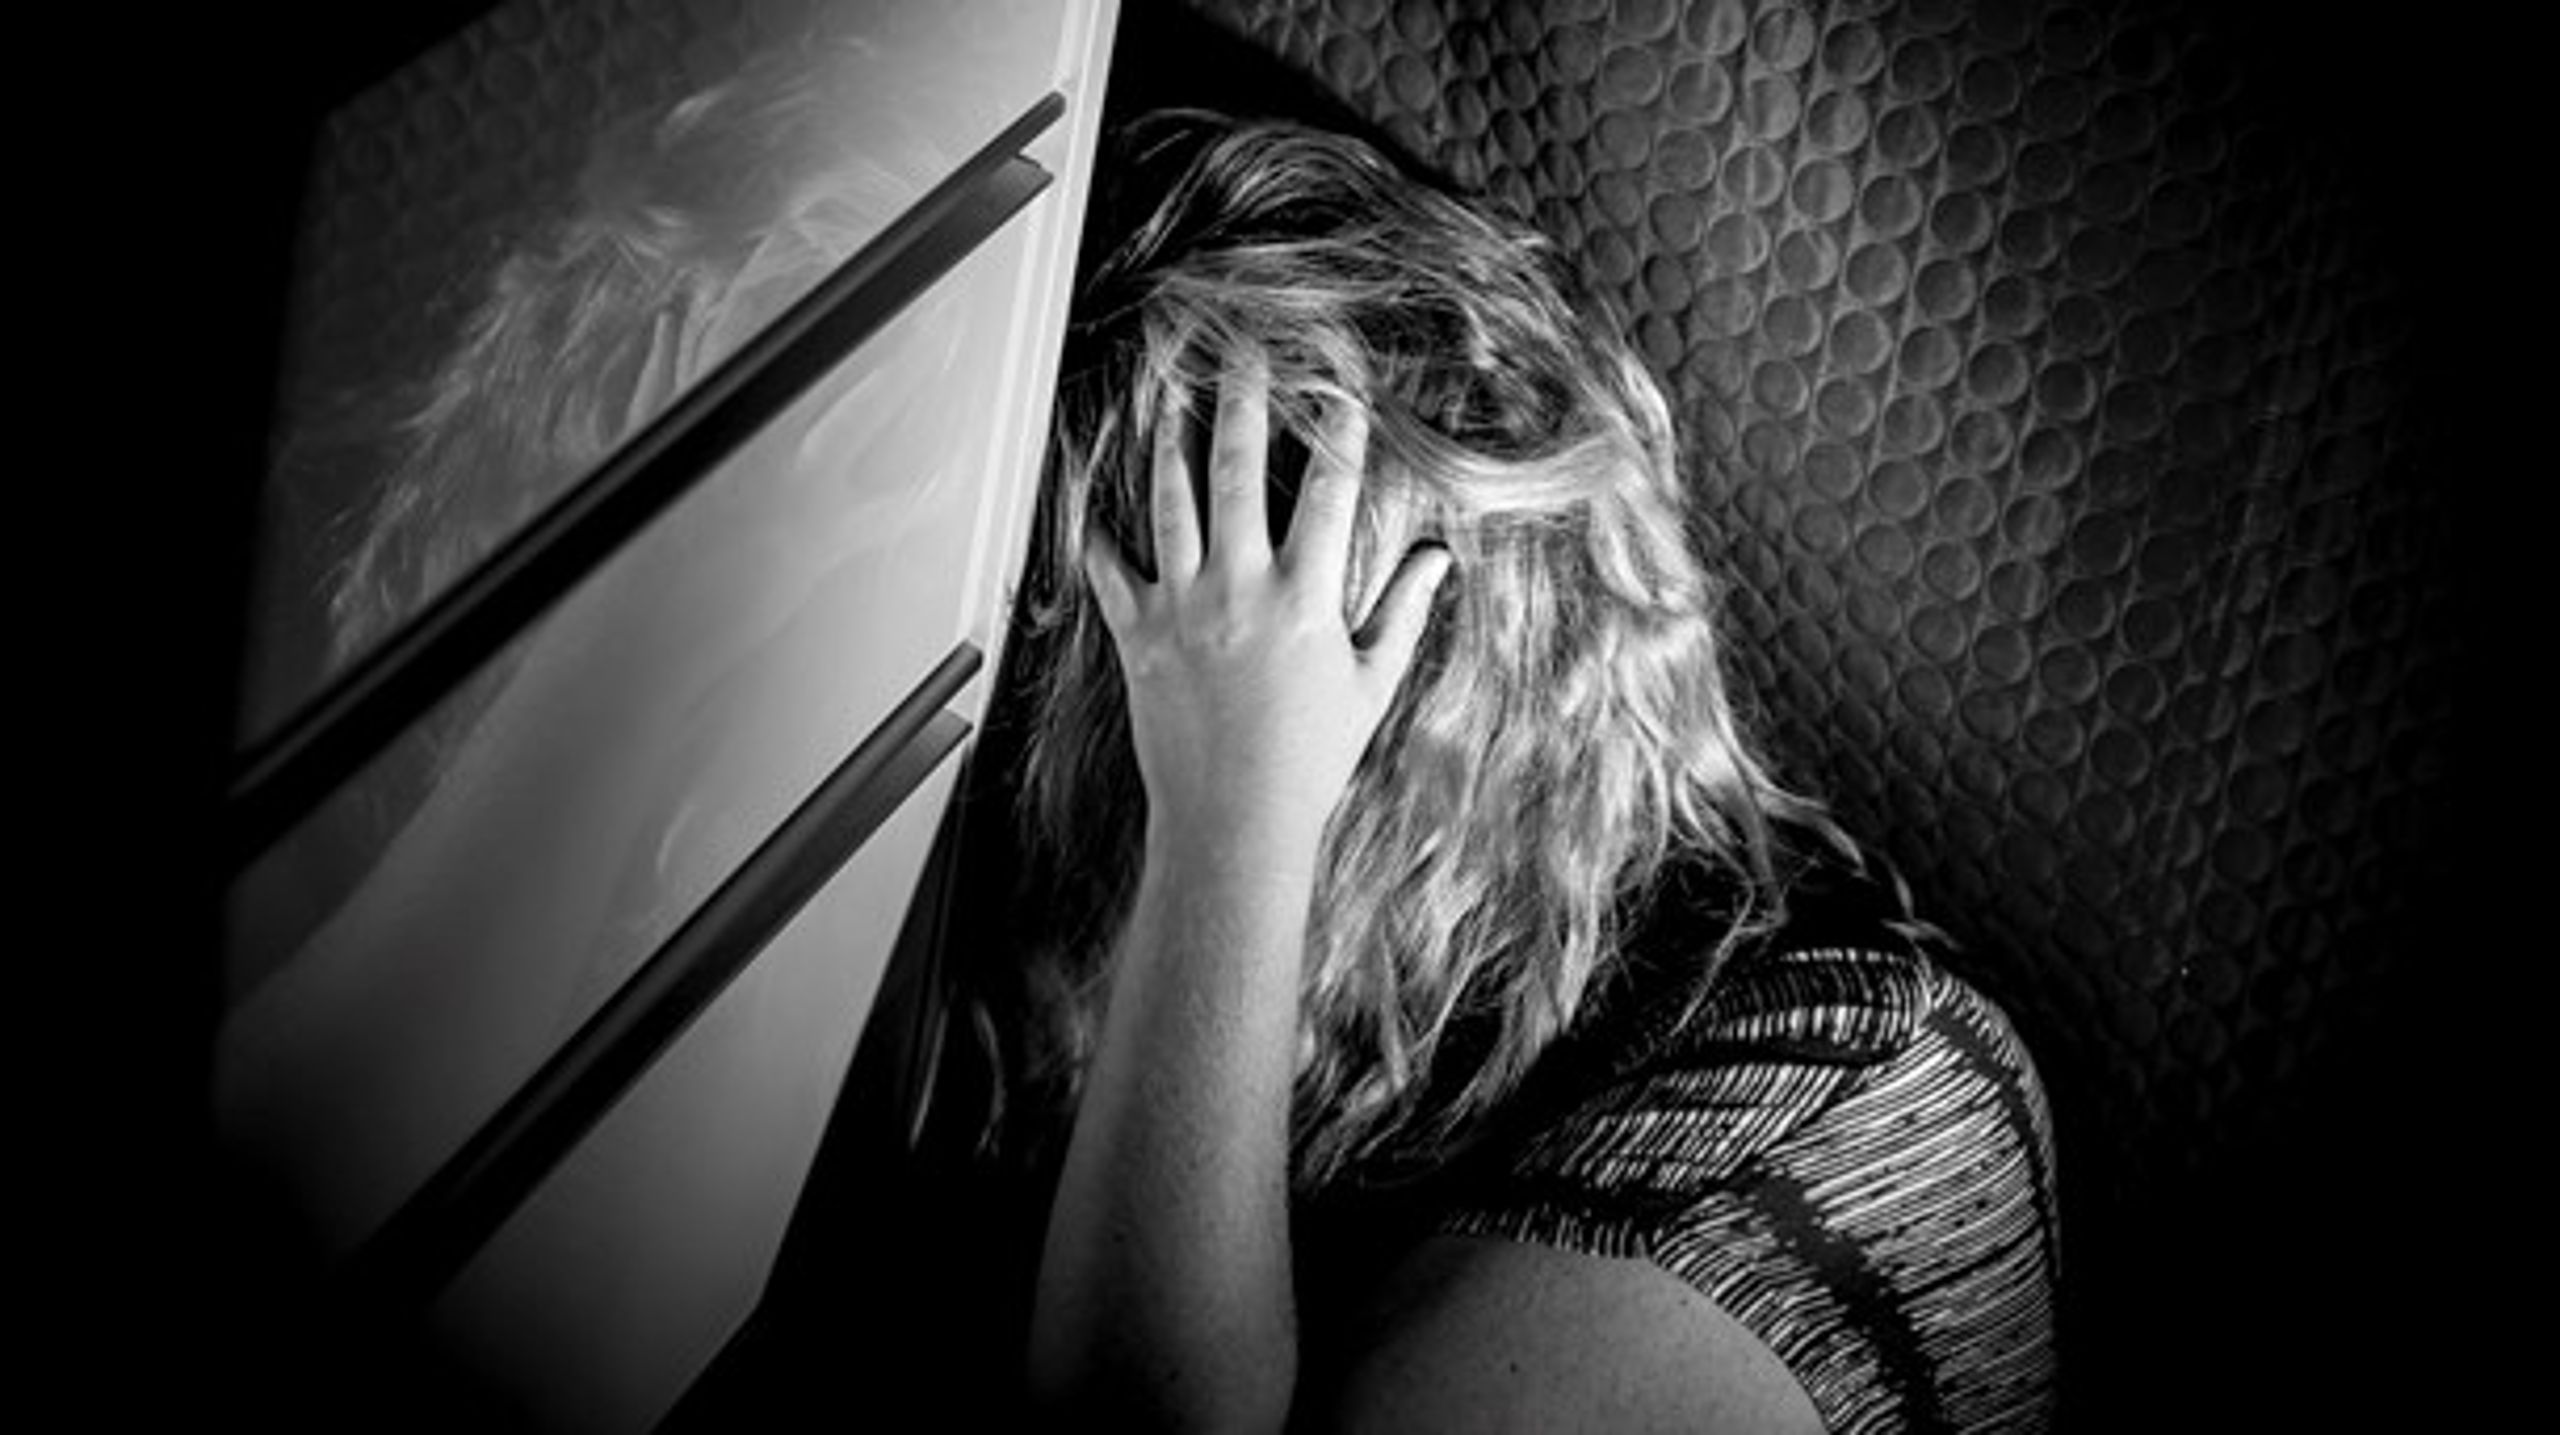 Vi har en voksende gruppe af ikke mindst unge, hvor selvskadende adfærd og angst er et voksende problem, skriver Helle Linnet.